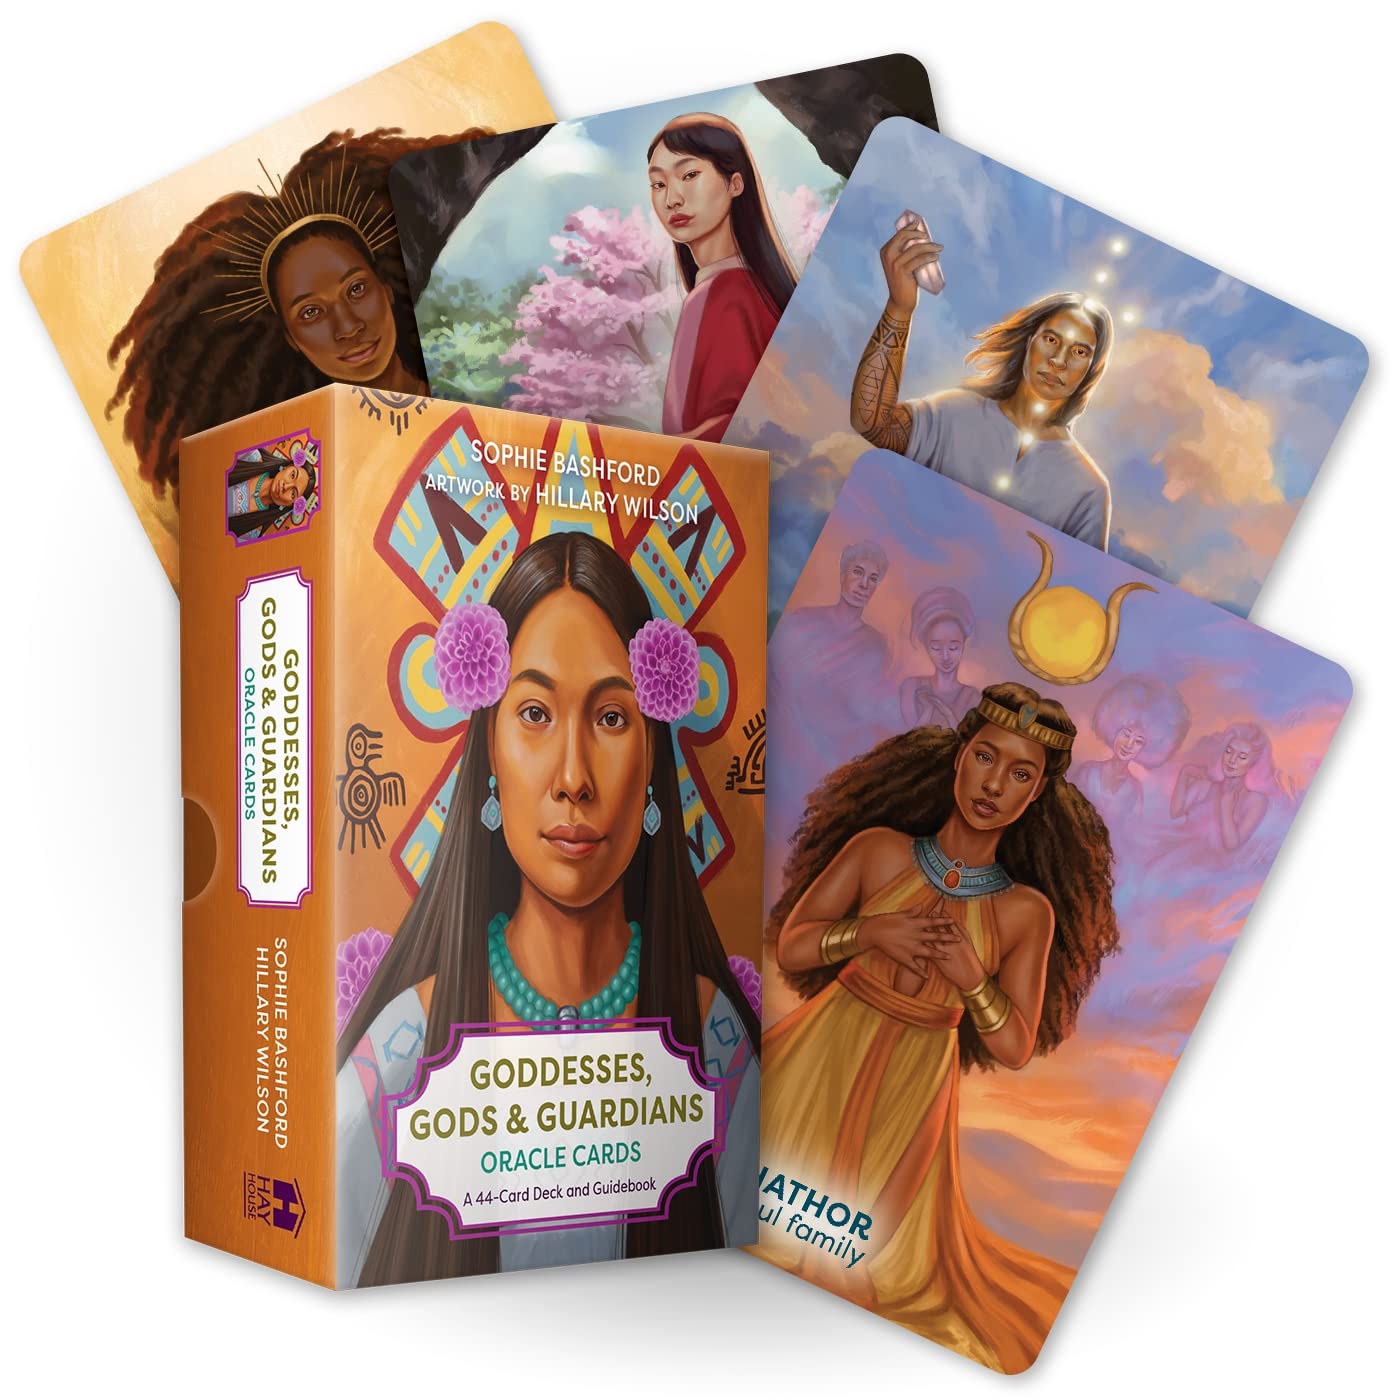 Goddesses, Gods & Guardians Oracle Cards || Sophie Bashford